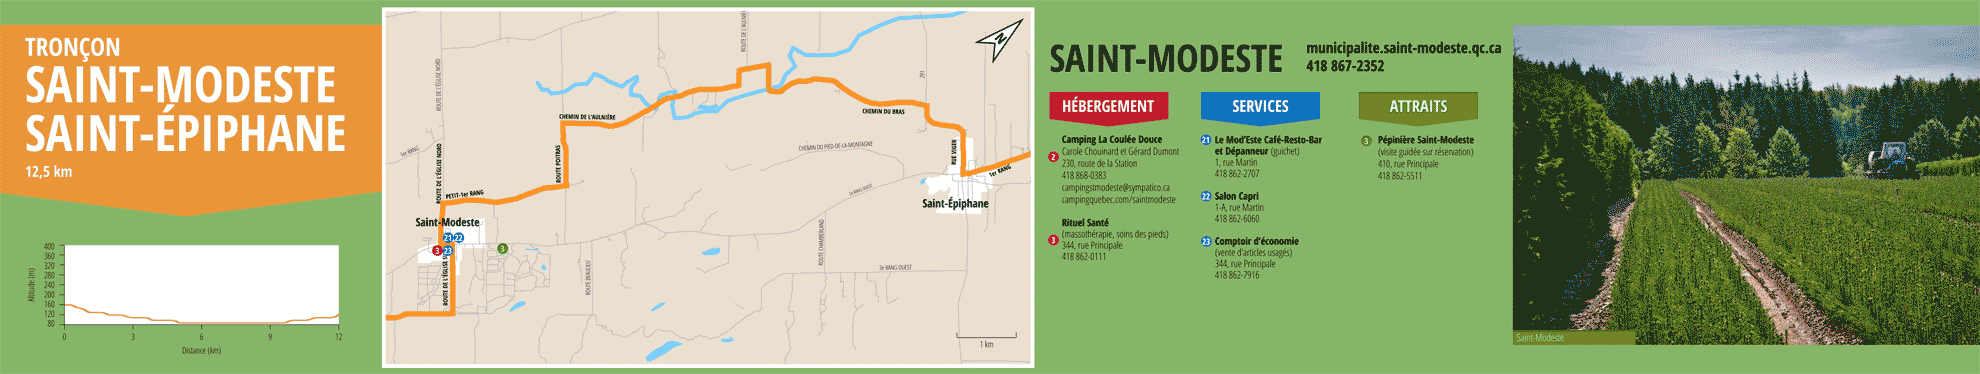 La Route des passants - Tronçon Saint-Modeste/Saint-Épiphane